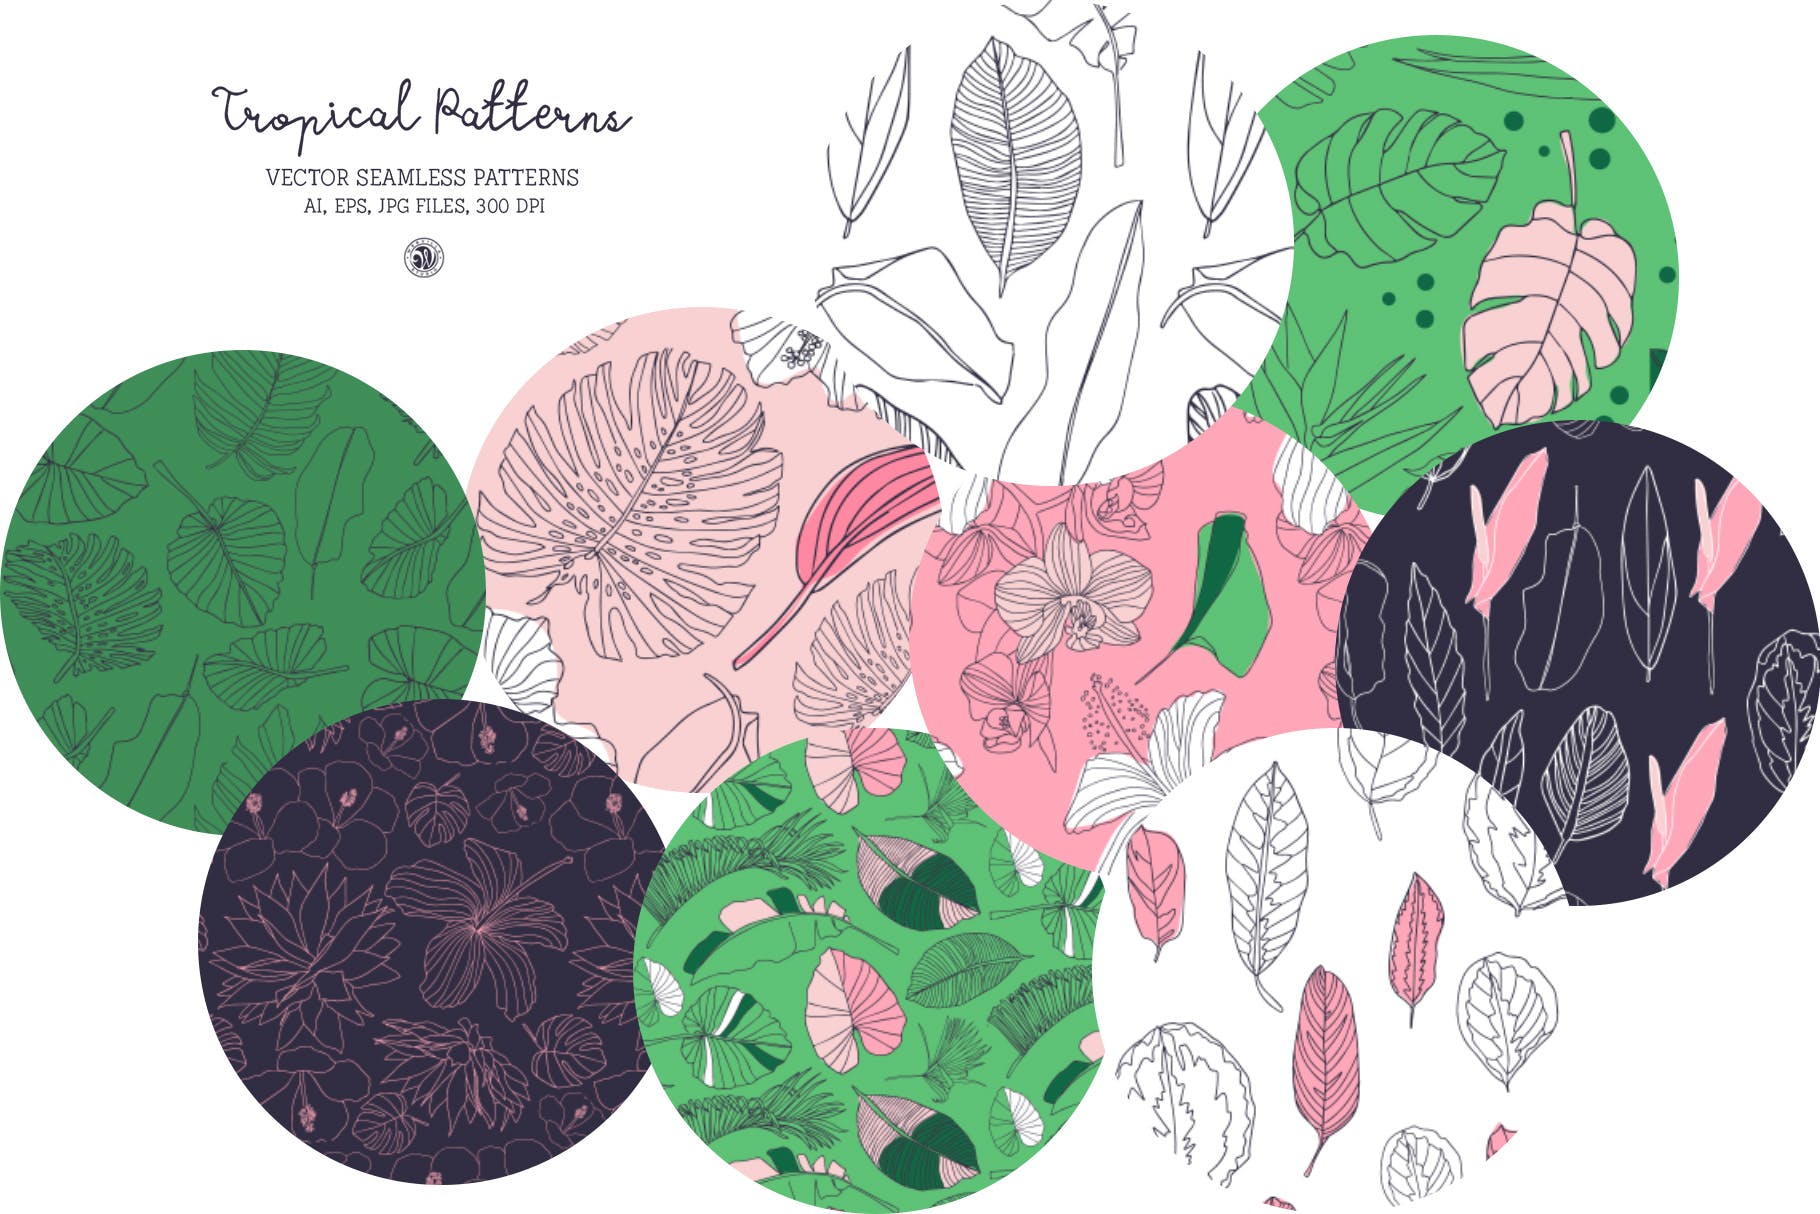 热带植物手绘图案纹样背景素材 Tropical Patterns插图(5)